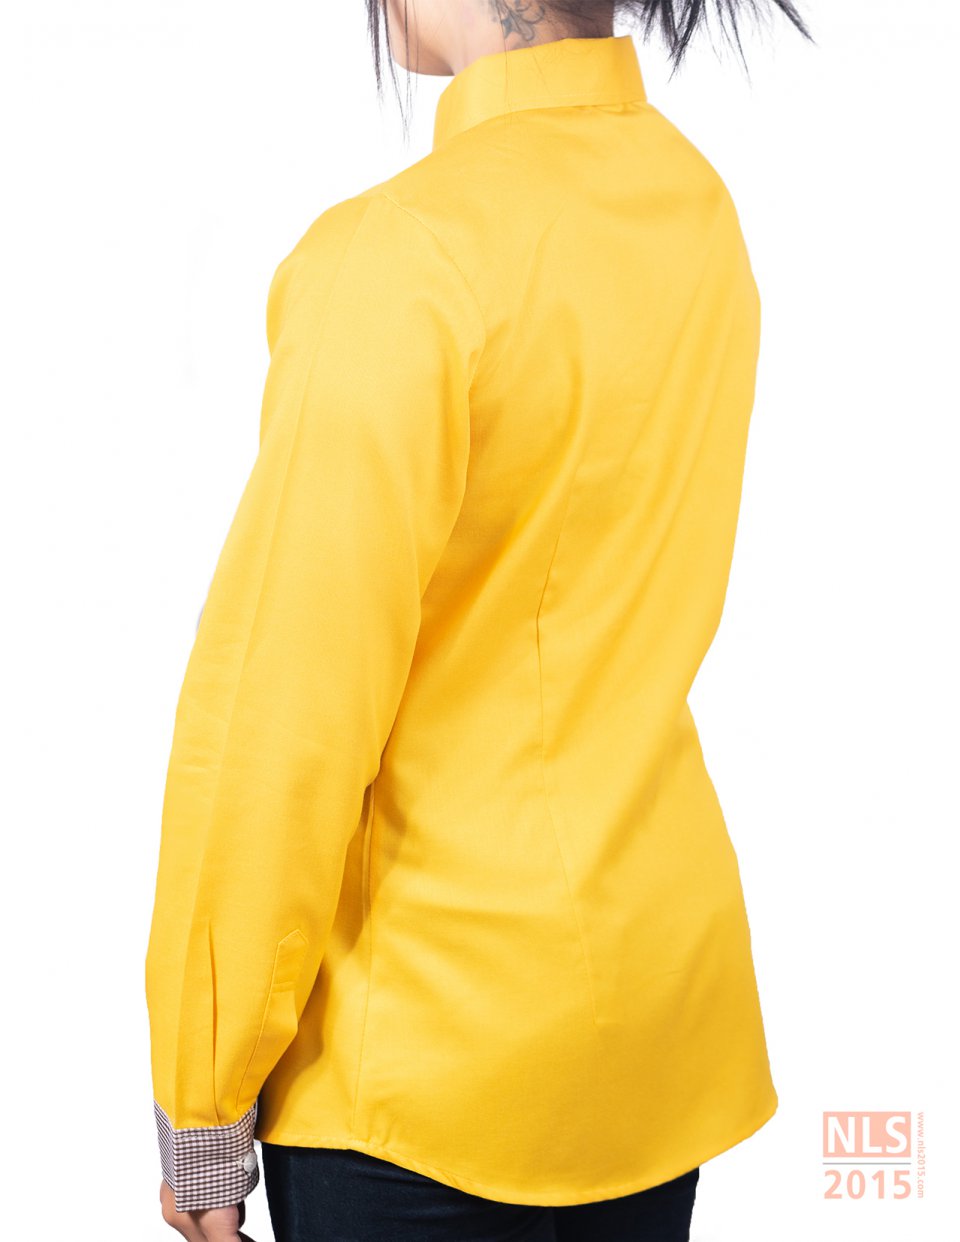 โรงงานผลิตเสื้อเชิ้ตพนักงานออฟฟิศ พร้อมบริการออกแบบ และขึ้นตัวอย่างให้ฟรี ก่อนผลิตจริง บริษัท นลินสิริ 2015 จำกัด ชลบุรีรูปที่ 